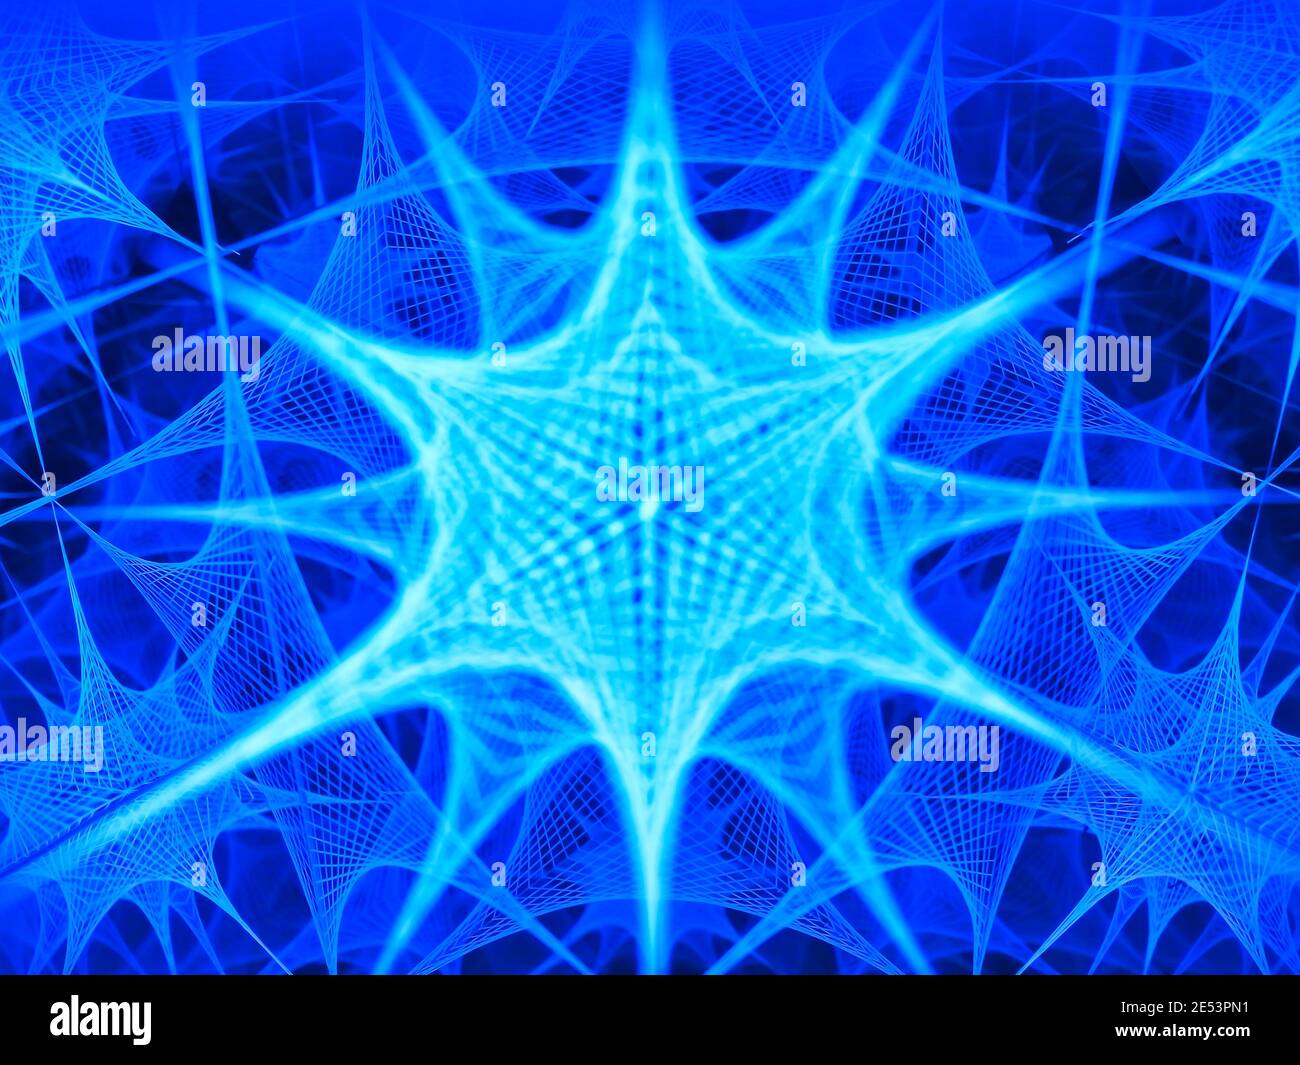 Fotografie eines Kaleidoskops, das einen kreativen Hintergrund aus Blau darstellt Laserstrahlen geformt wie ein gefrorener Stern leuchtet und reflektiert In mehreren Spiegeln Stockfoto